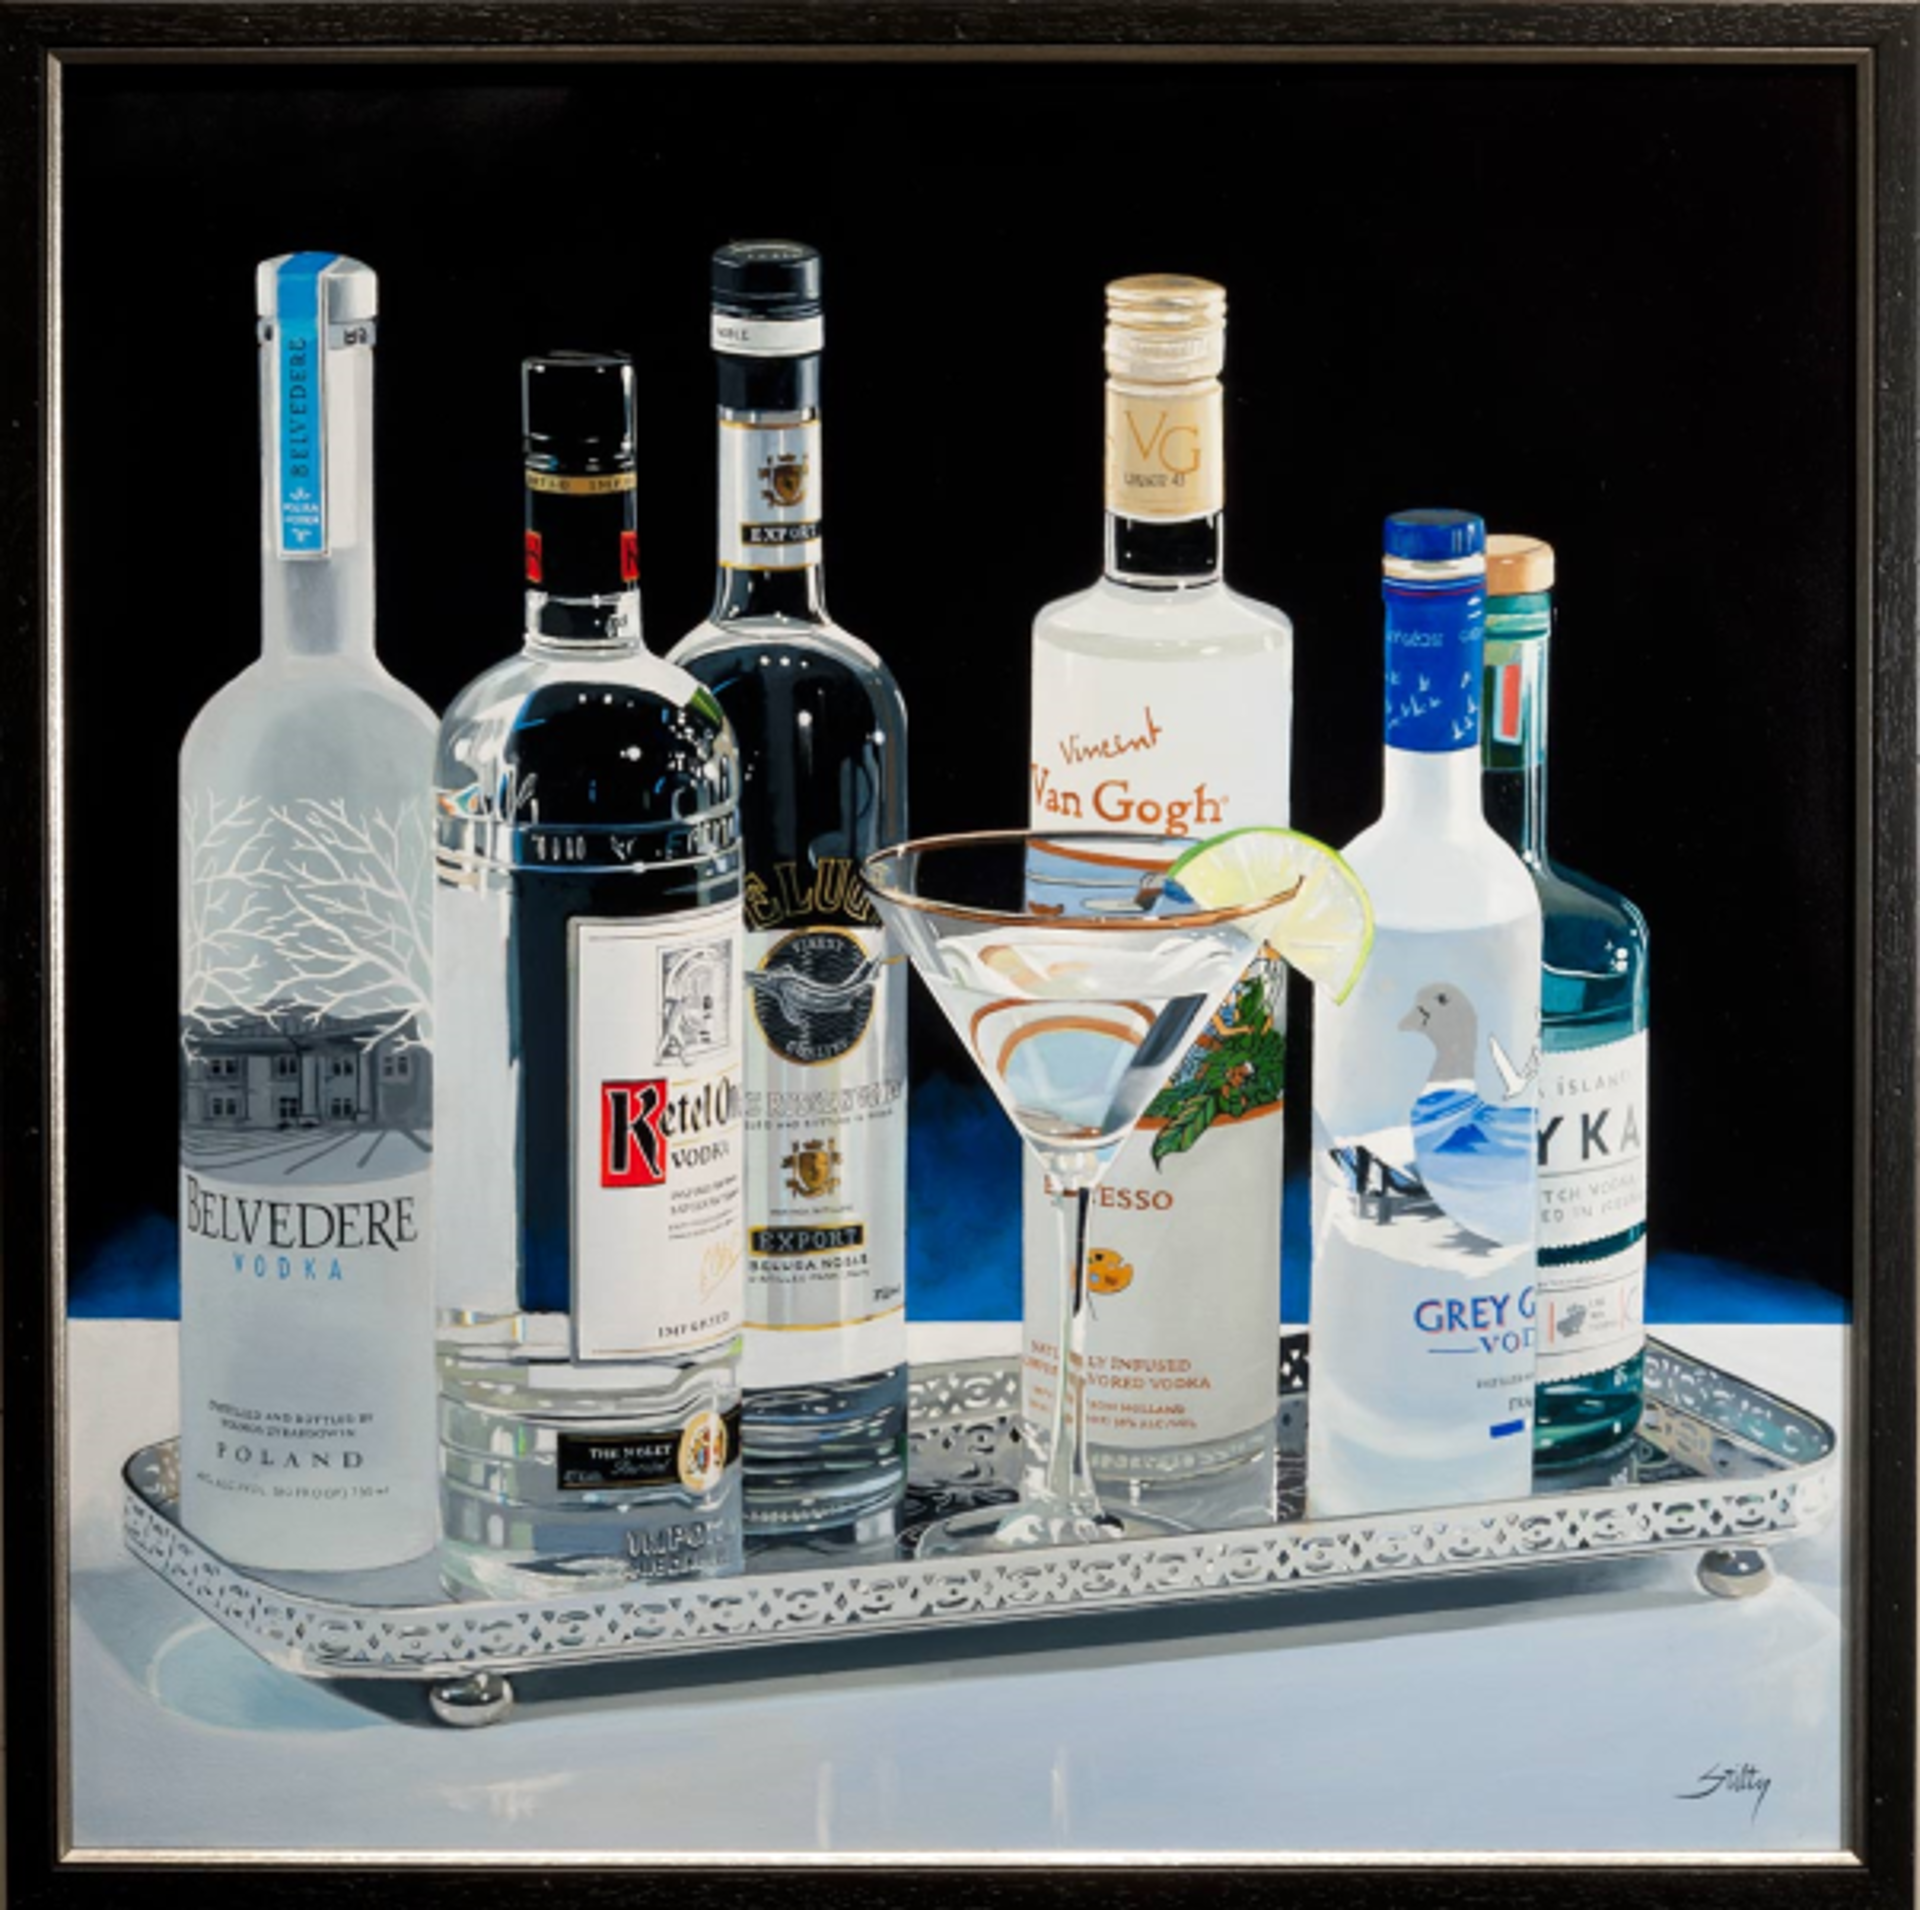 World of Vodka by Tom Stiltz